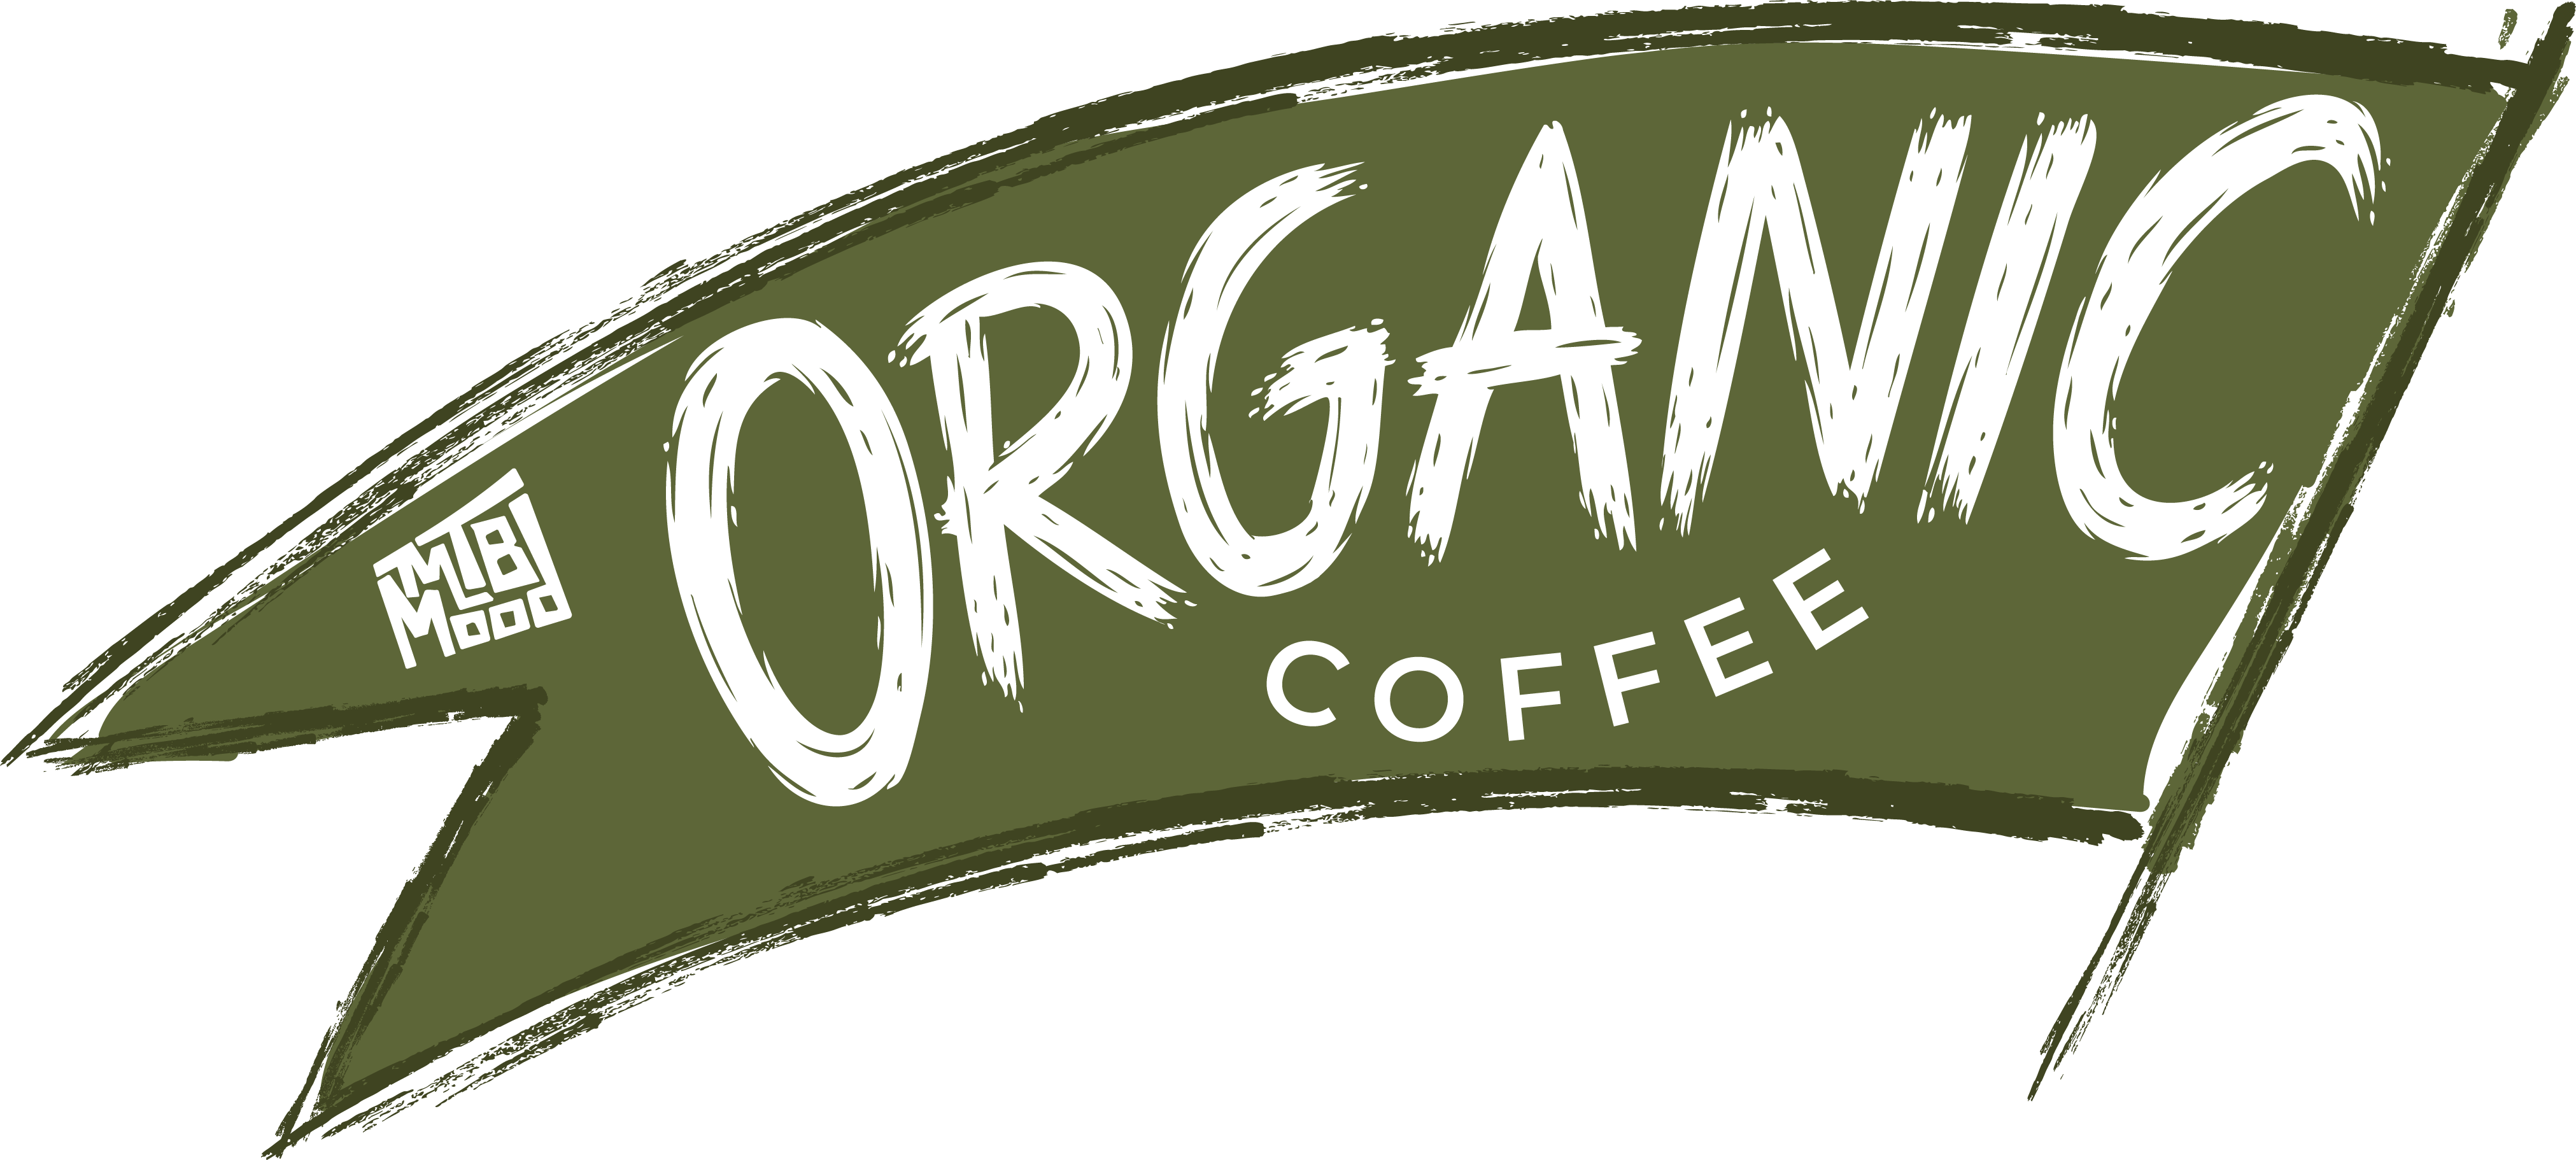 Café Orgánico